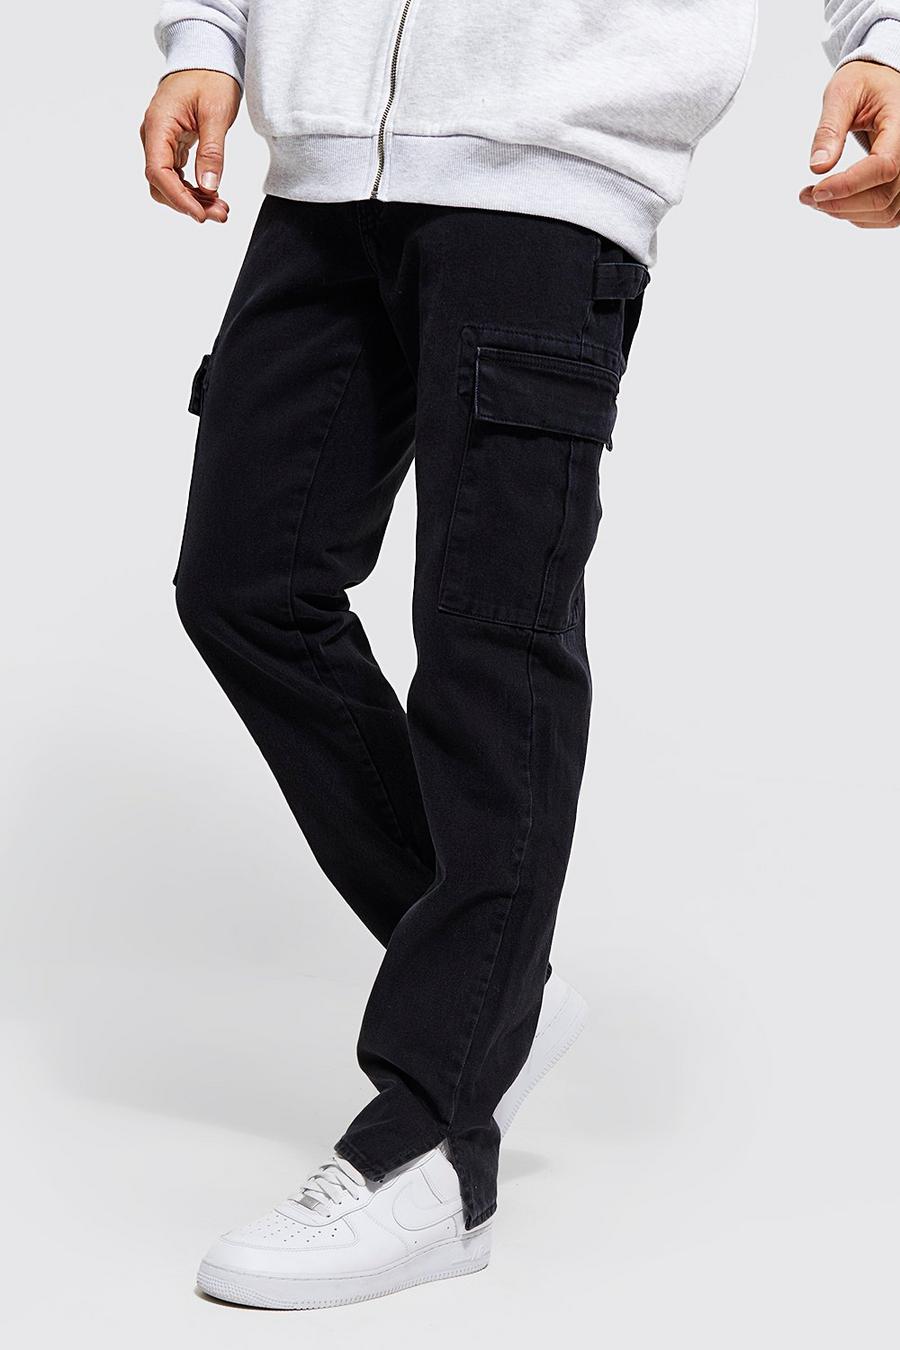 שטיפה כהה blue ג'ינס קרגו בגזרה ישרה עם רוכסן בצד ומכפלת לגברים גבוהים image number 1